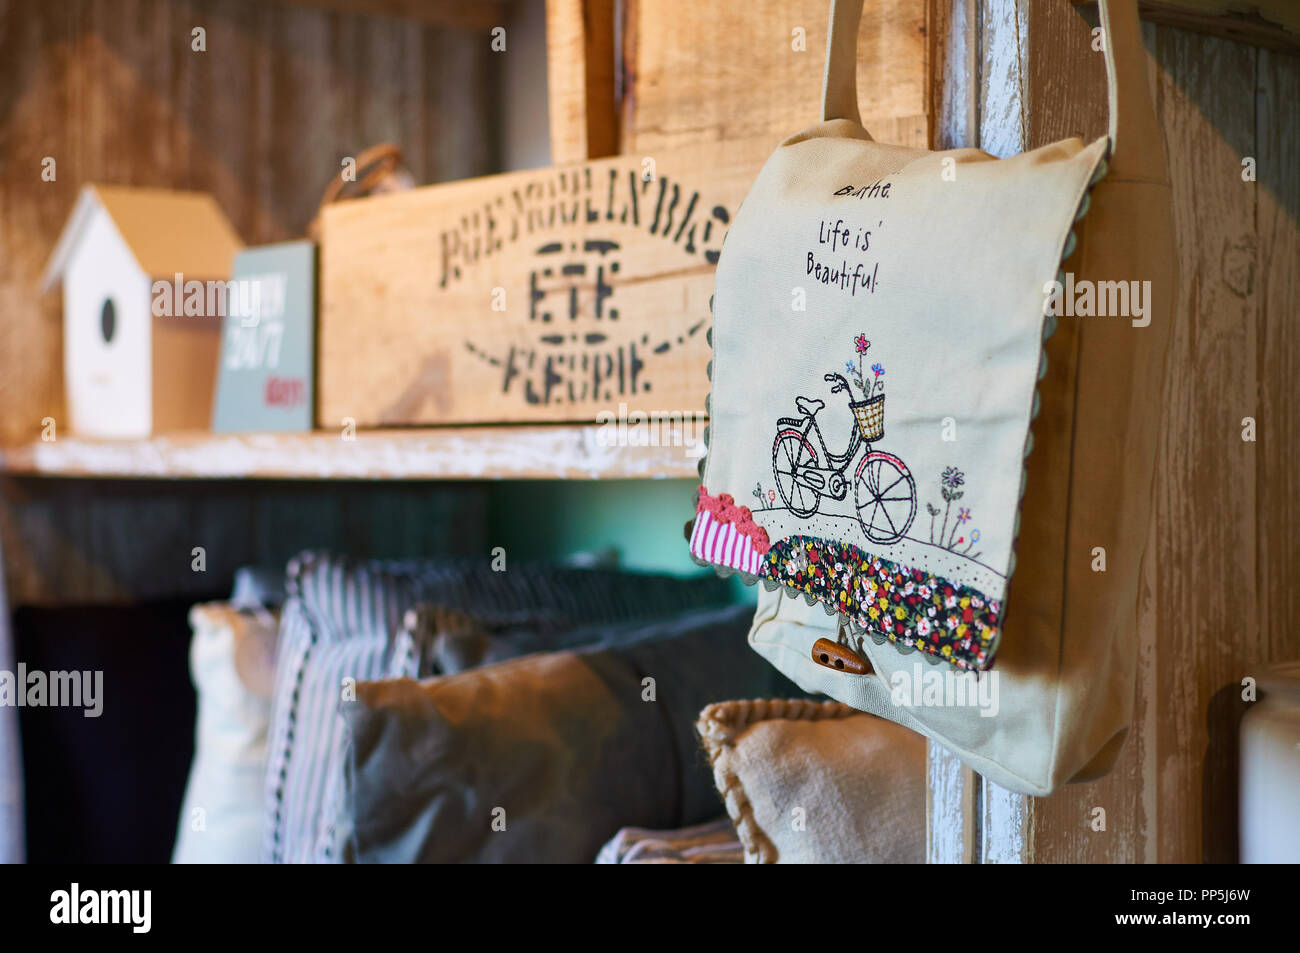 Sac à main sac à main avec la vie est belle message et d'autres trucs dans pouvez Xicu vintage shop dans la région de El Pilar de La Mola(Formentera, Iles Baléares, Espagne) Banque D'Images